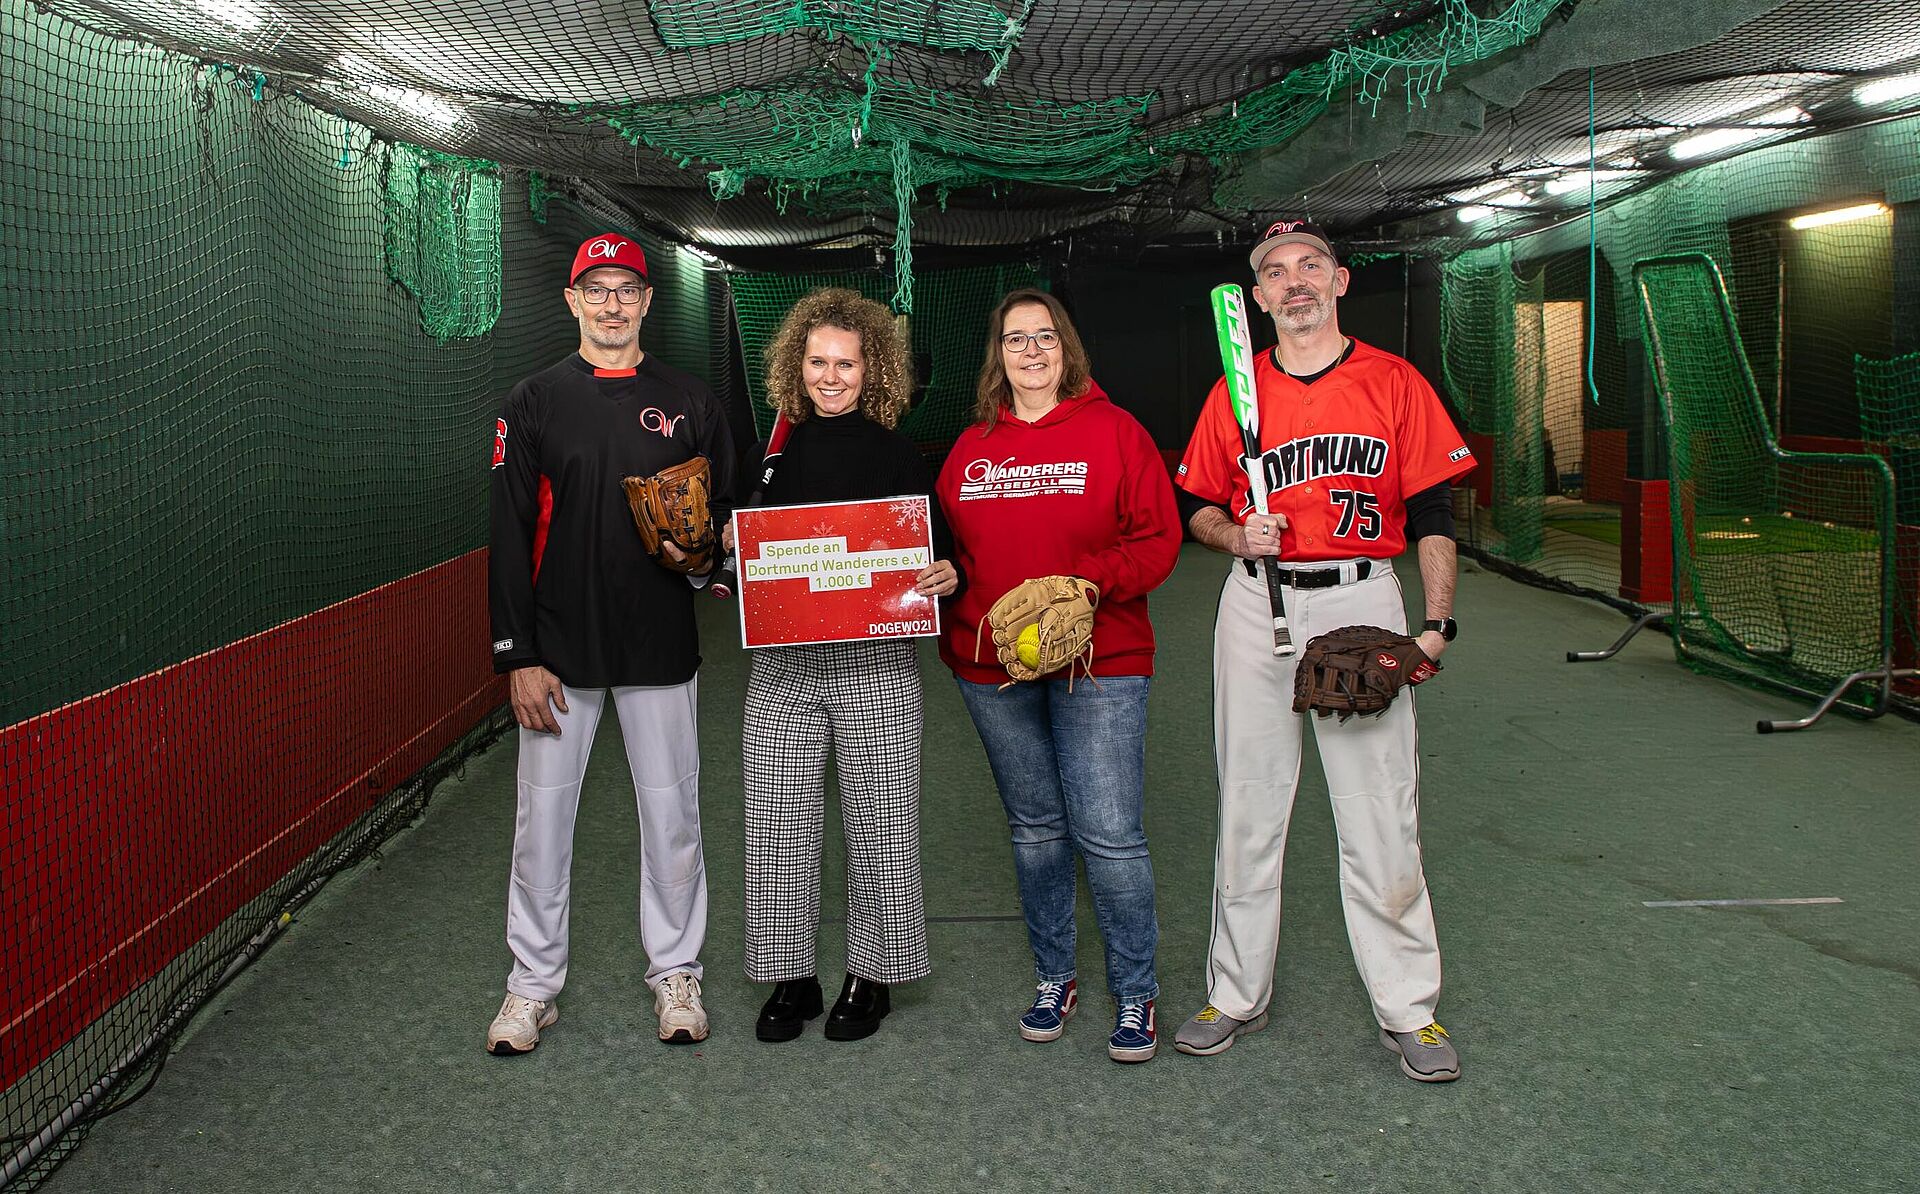 Zwei Frauen und zwei Männer stehen in einer Baseball-Trainingshalle mit Fangnetzen und halten einen symbolischen Spendenscheck.